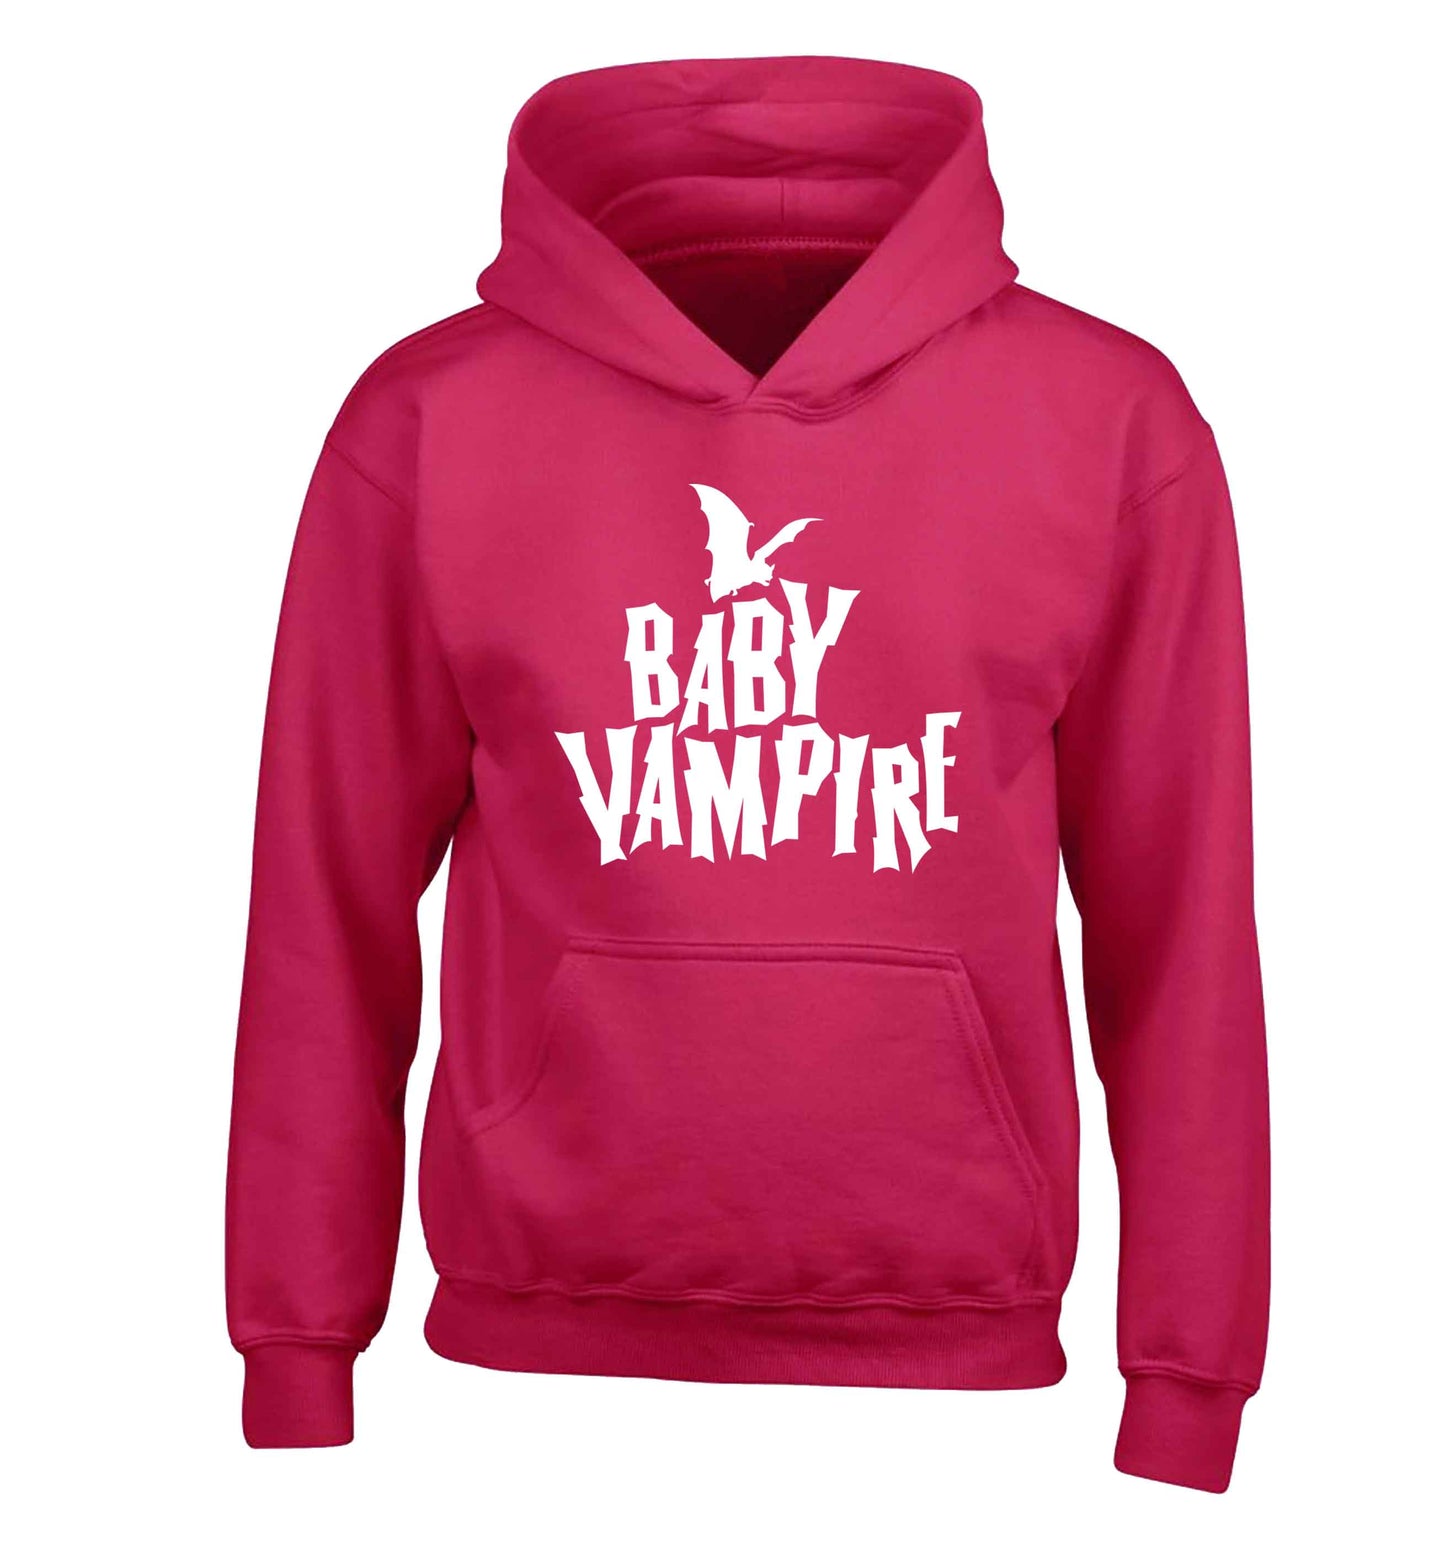 Baby vampire children's pink hoodie 12-13 Years